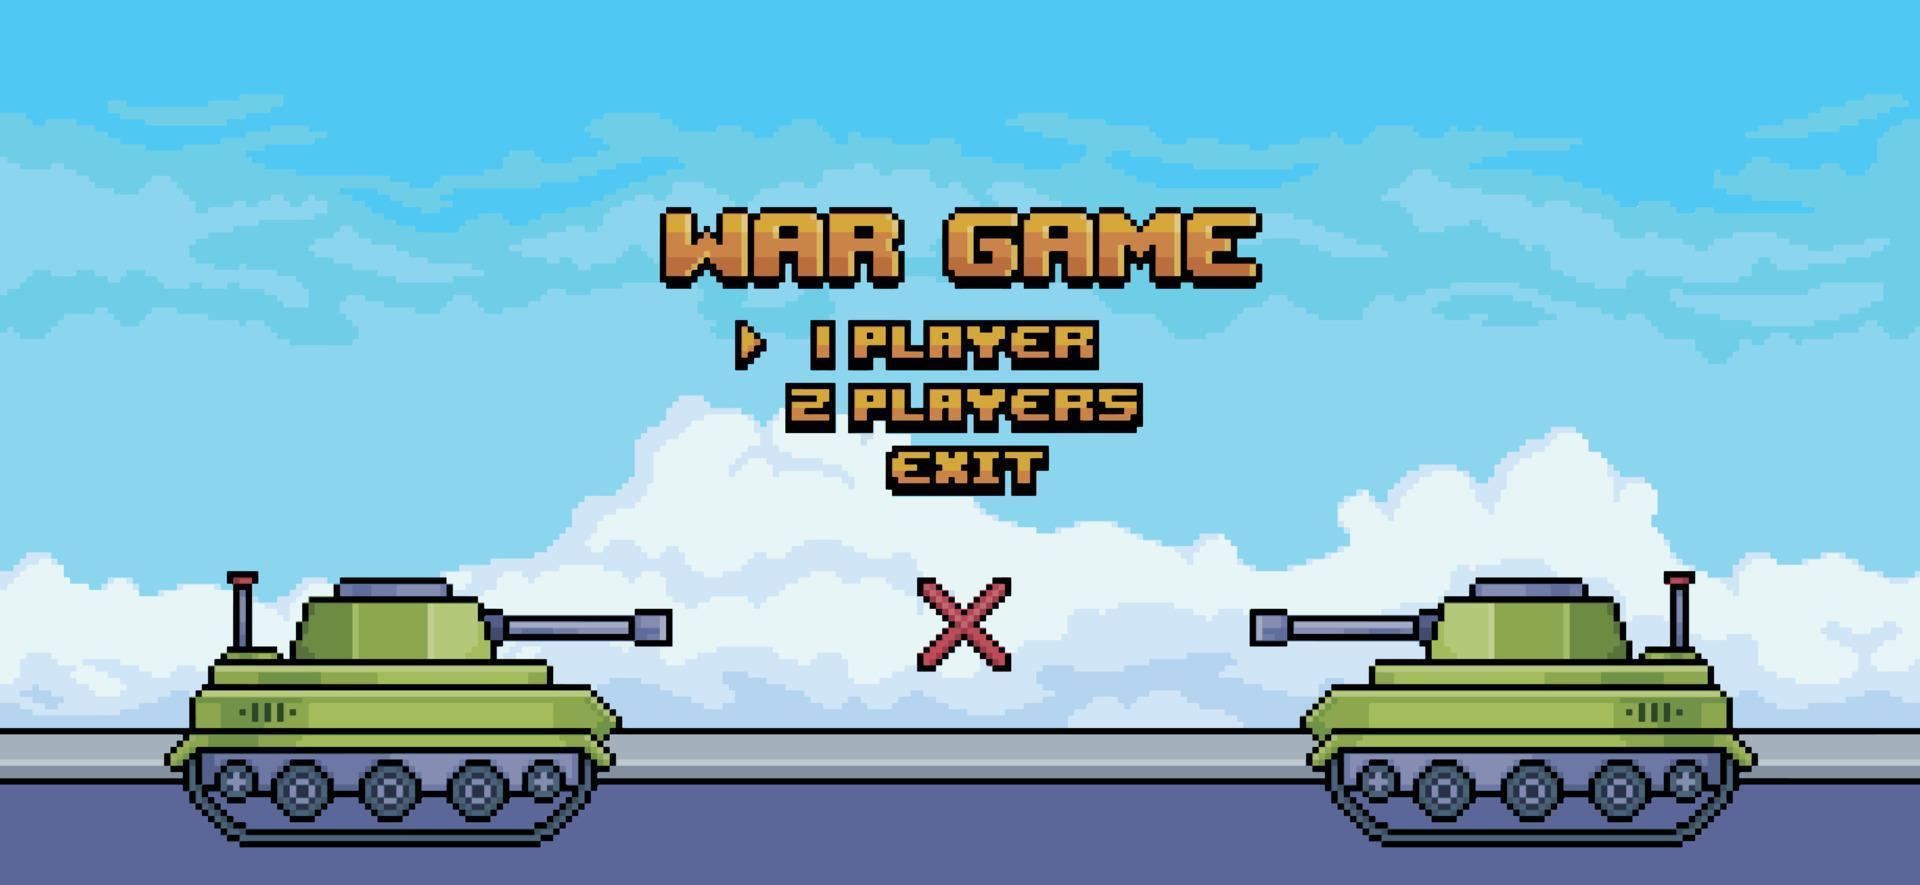 pantalla de presentación del juego de guerra de pixel art con tanques de guerra en la calle, fondo vectorial para el juego de 8 bits vector